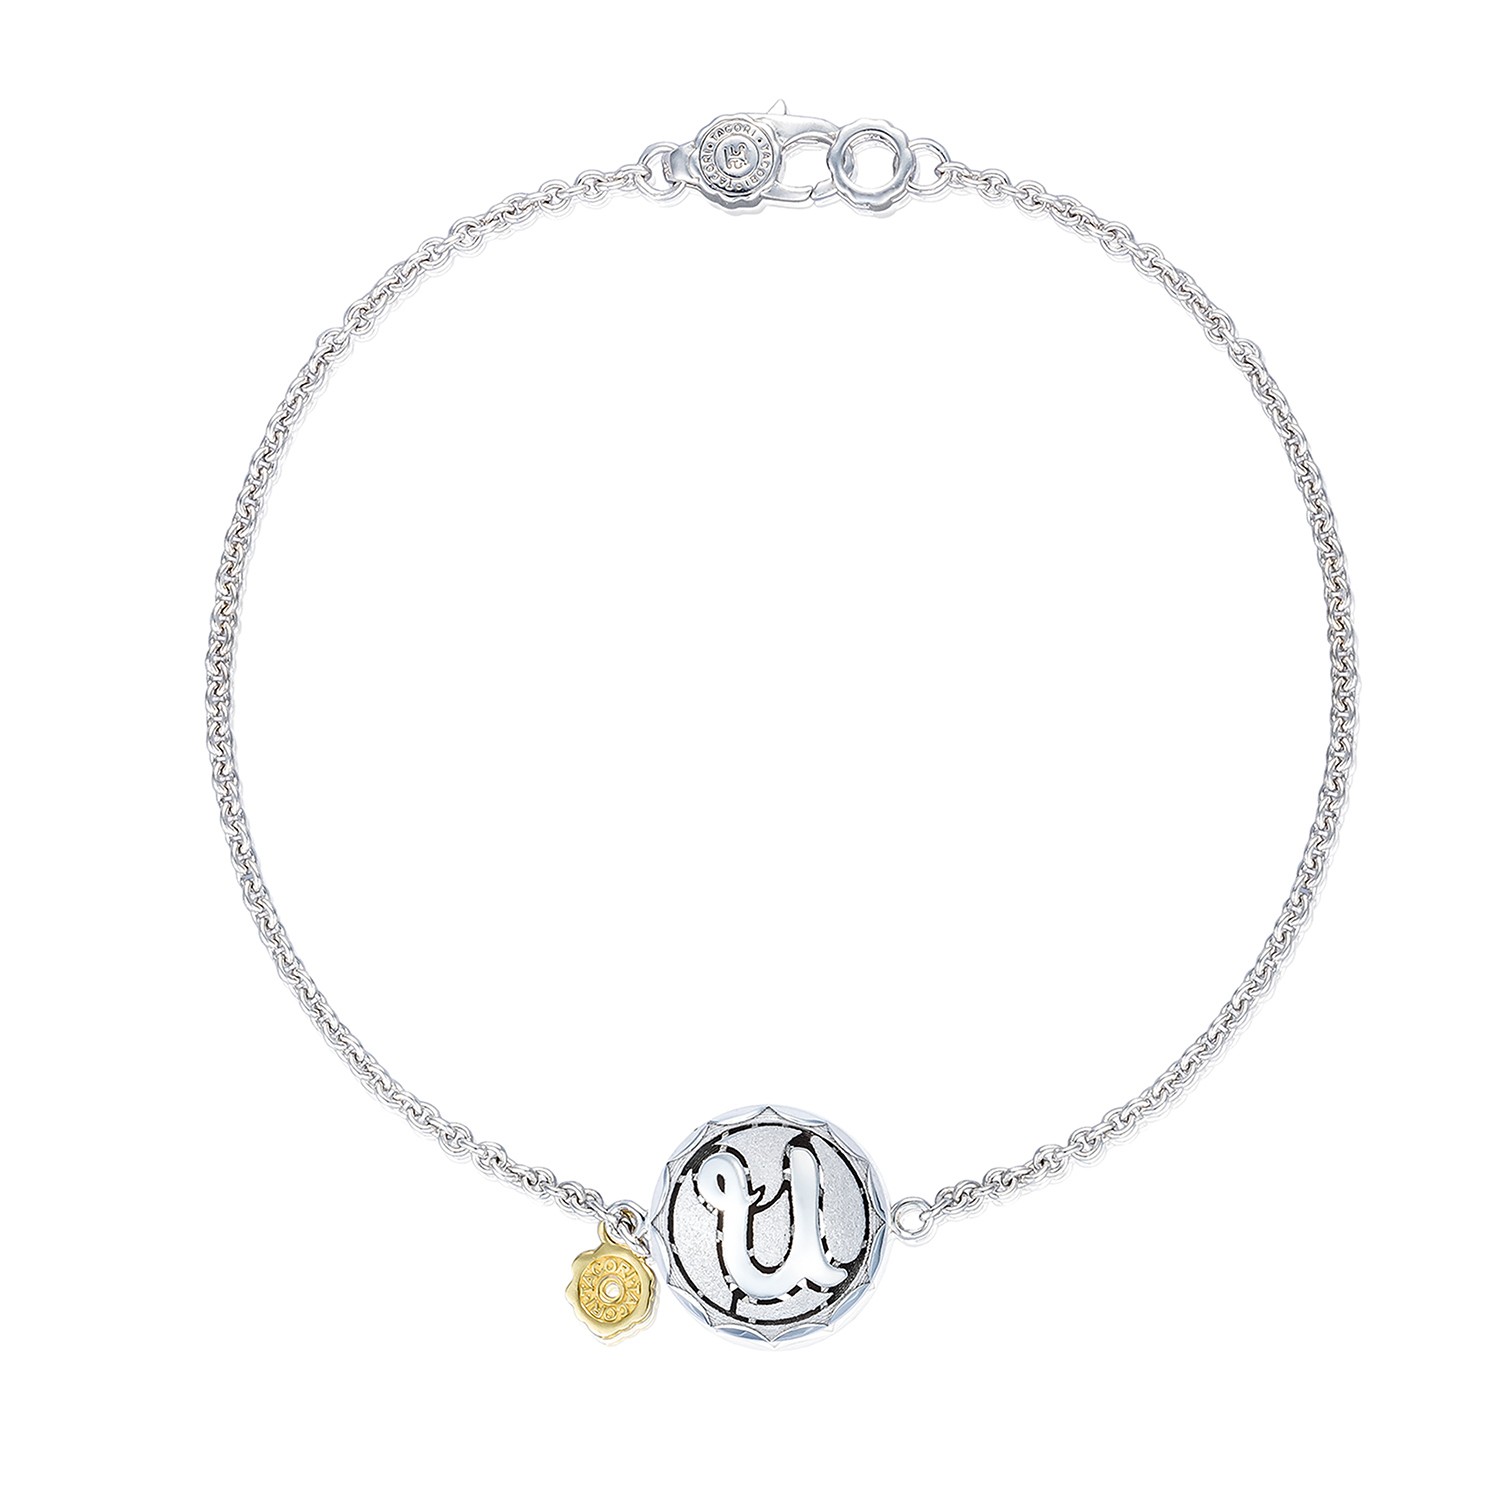 Monogram Chain Bracelet sb197usb - Bracelets - Jewelry